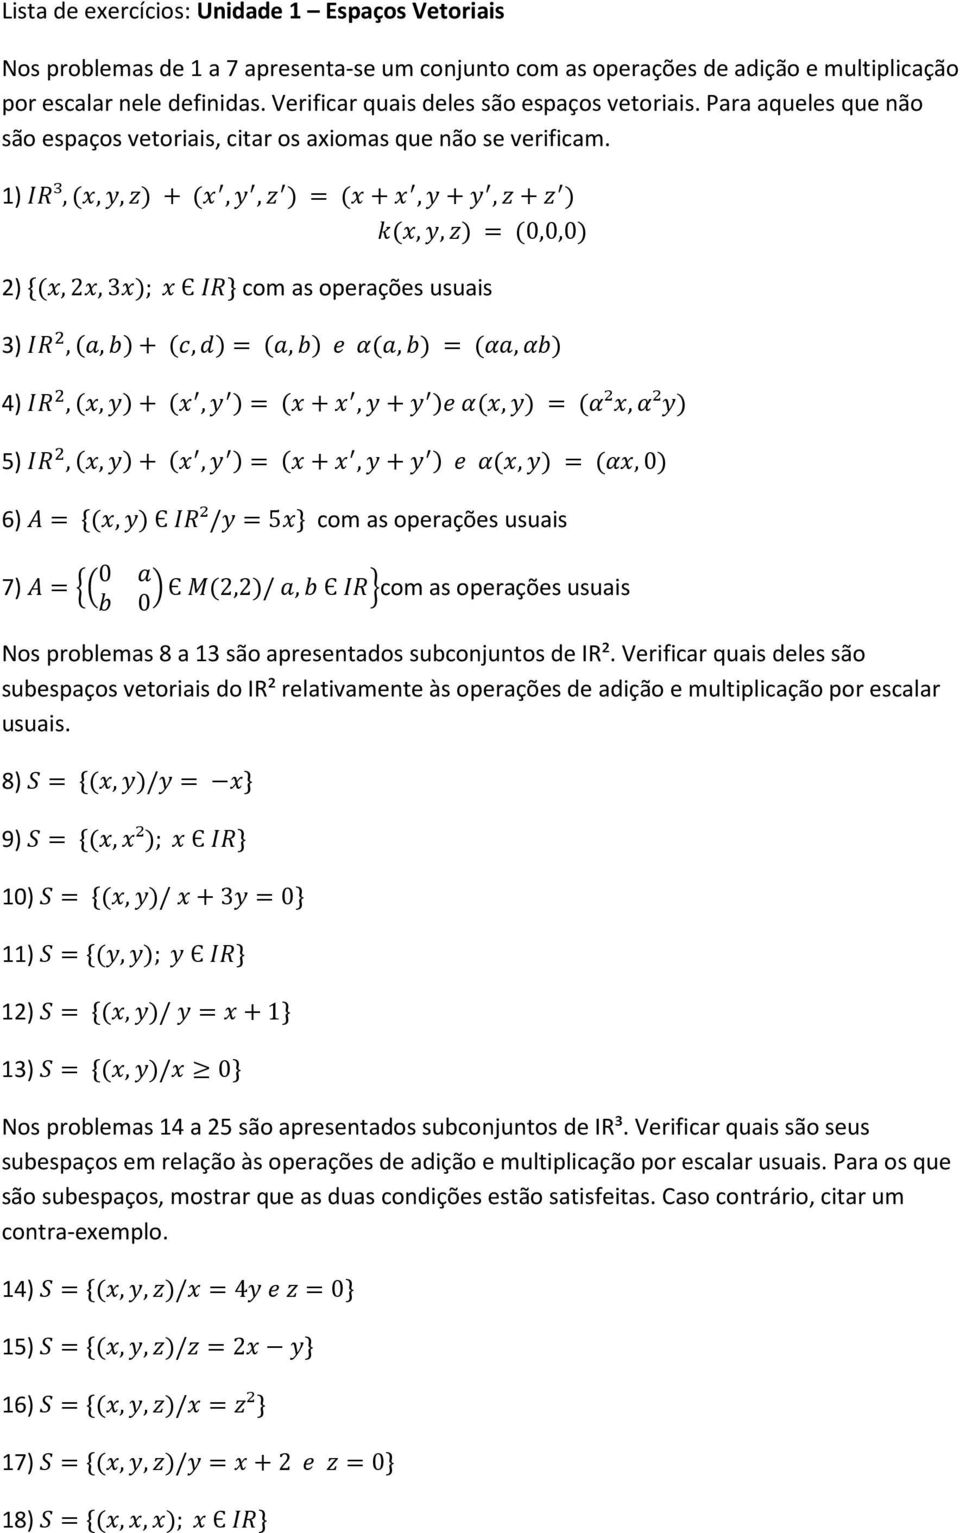 1) ³,(,,) + (,, ) = (+,+,+ ) (,,) = (0,0,0) 2) {(,2,3); Є } com as operações usuais 3),(,)+ (,)= (,) (,) = (,) 4),(,)+ (, )= (+,+ ) (,) = (²,²) 5),(,)+ (, )= (+,+ ) (,) = (,0) 6) = {(,) Є ²/ =5} com